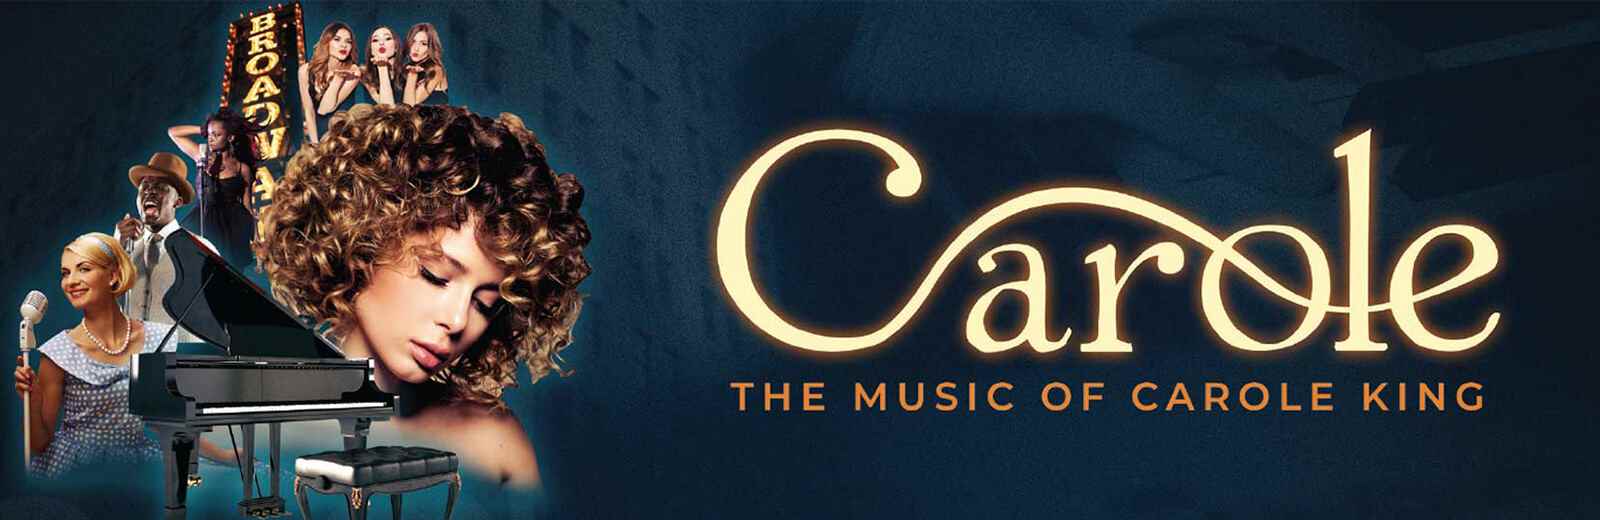 Carole - The Music of Carole King